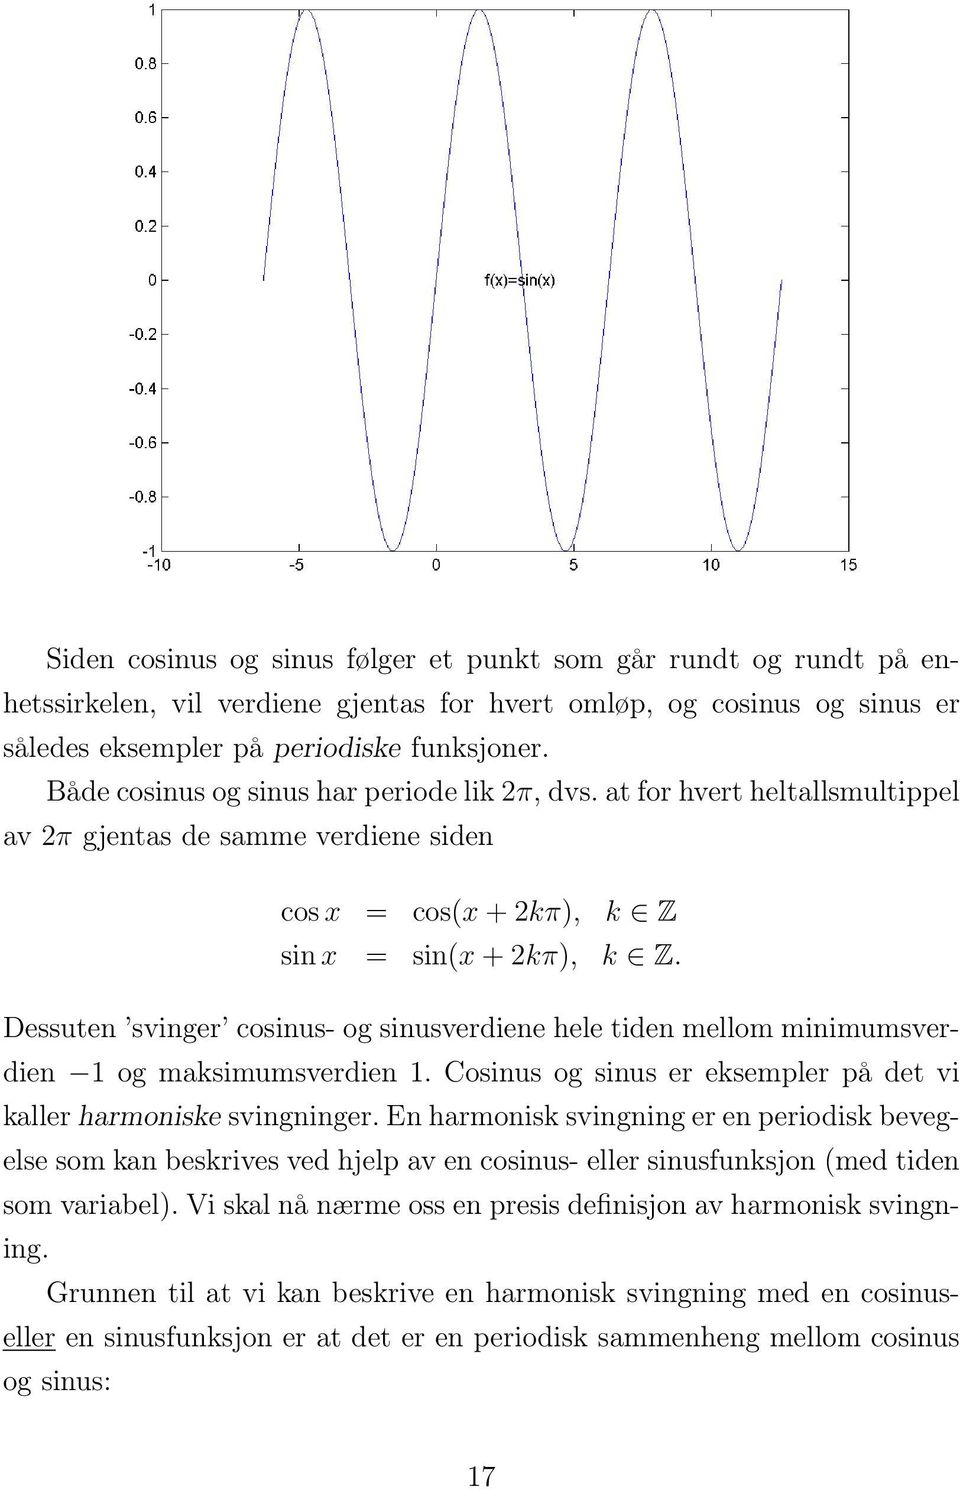 Dessuten svinger cosinus- og sinusverdiene hele tiden mellom minimumsverdien 1 og maksimumsverdien 1. Cosinus og sinus er eksempler på det vi kaller harmoniske svingninger.